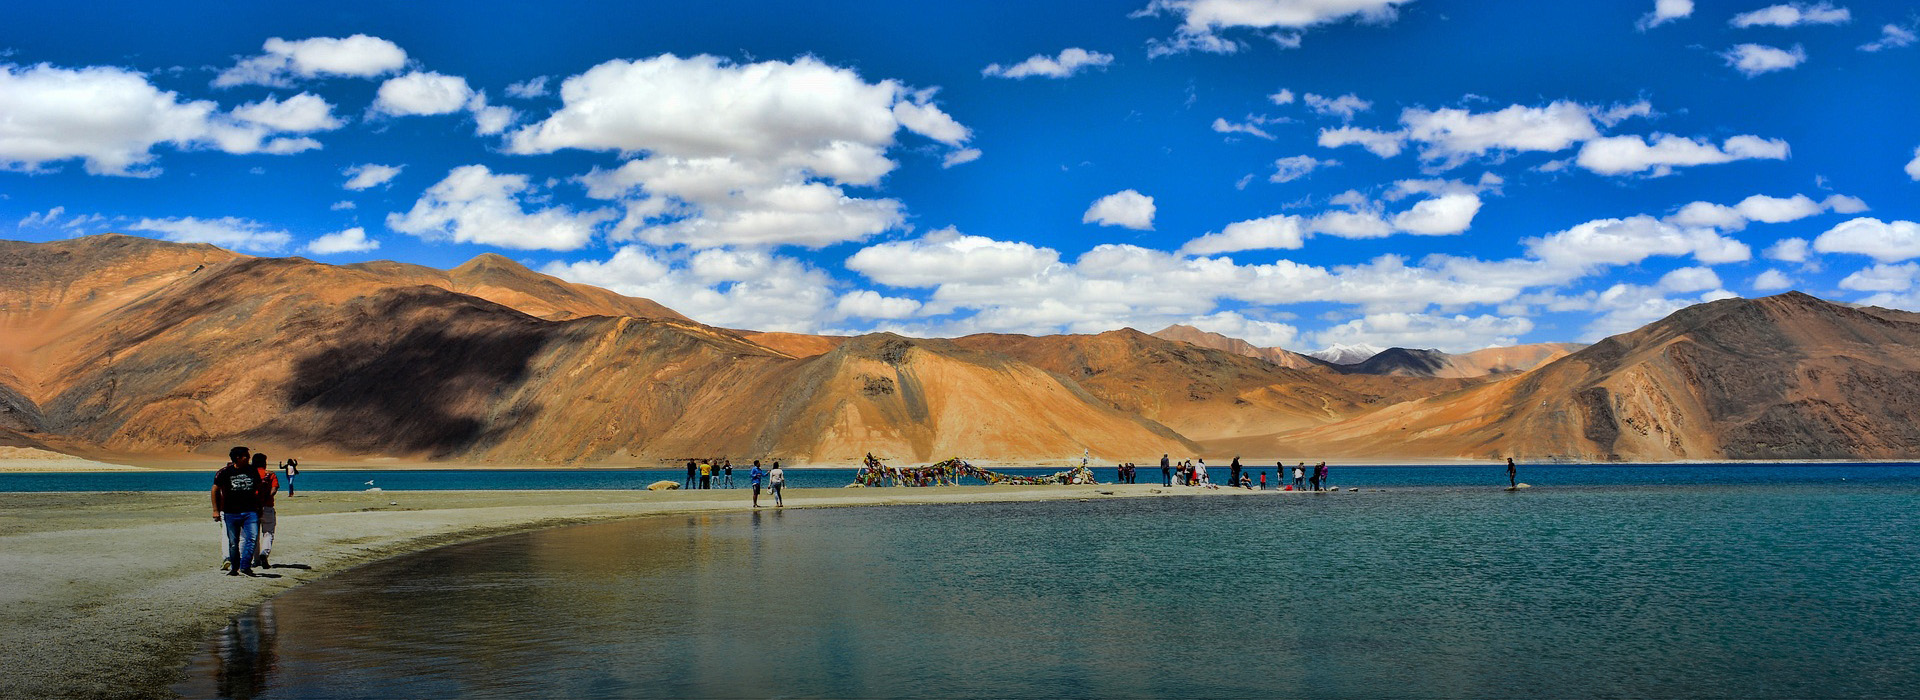 Leh & Ladakh Tour Packages